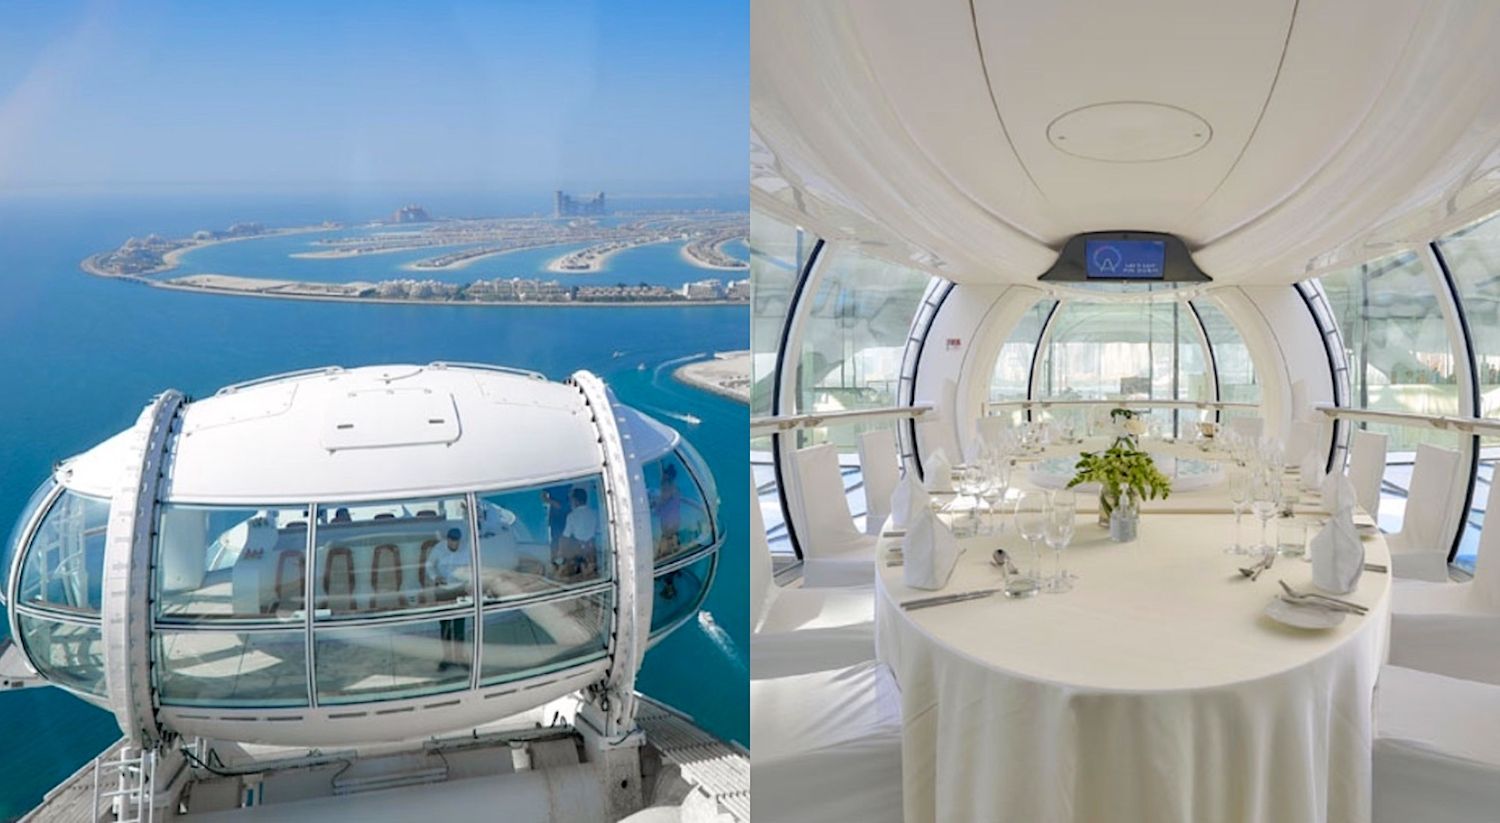 Найвище колесо огляду в світі Айн-Дубай відкриється для публіки 21 жовтня (Фото)